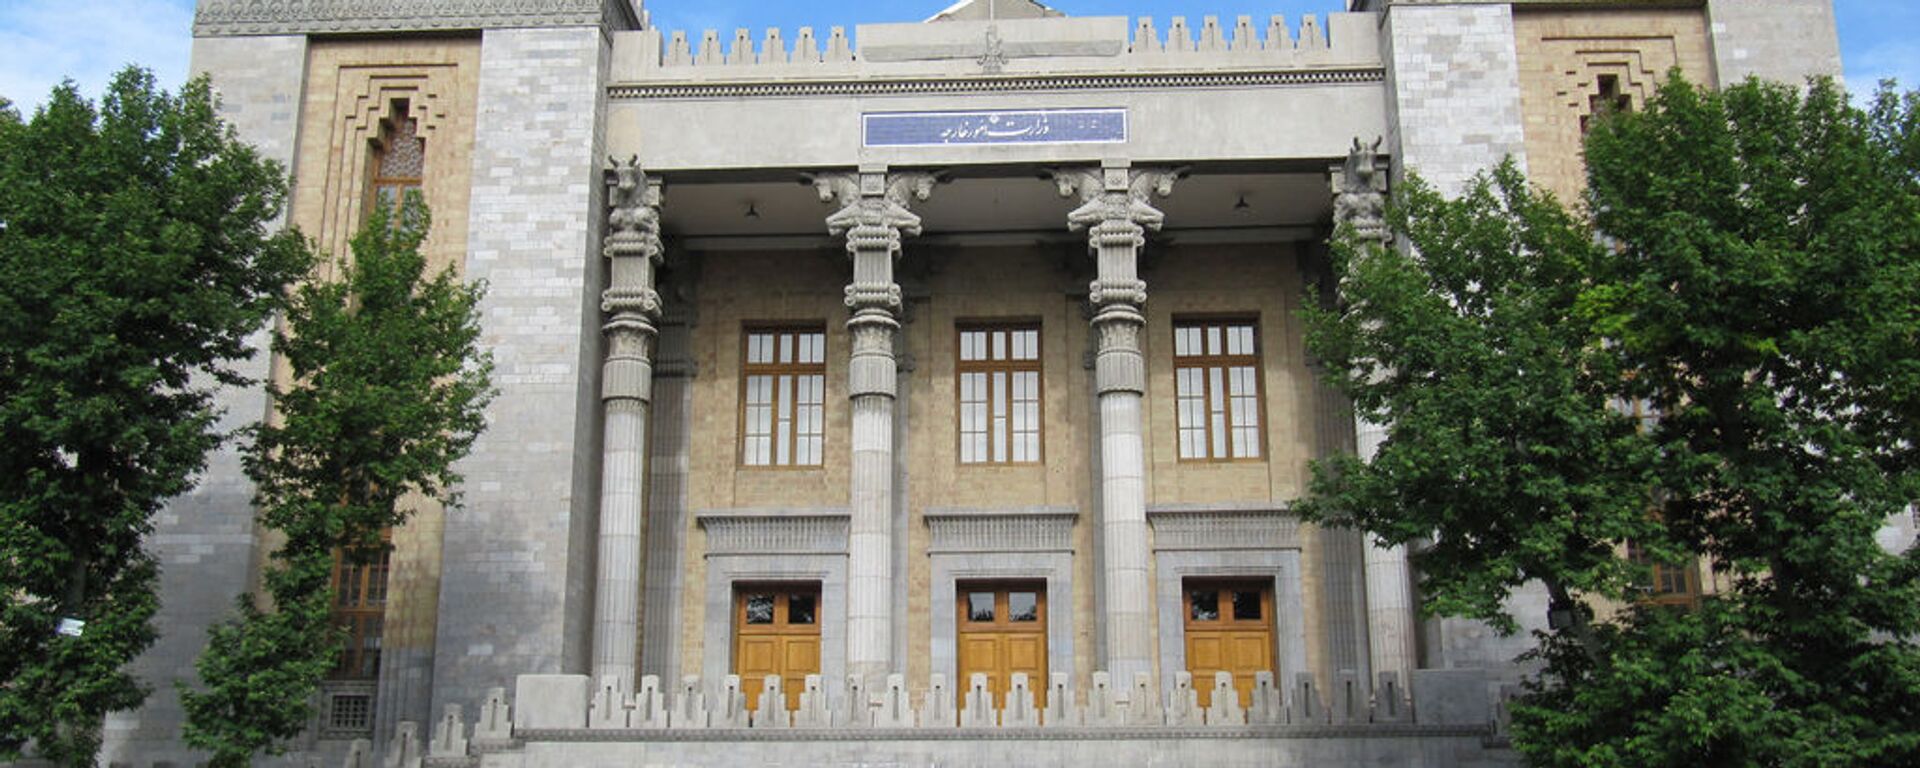 Здание МИД Исламской Республики Иран - Sputnik Армения, 1920, 26.04.2021